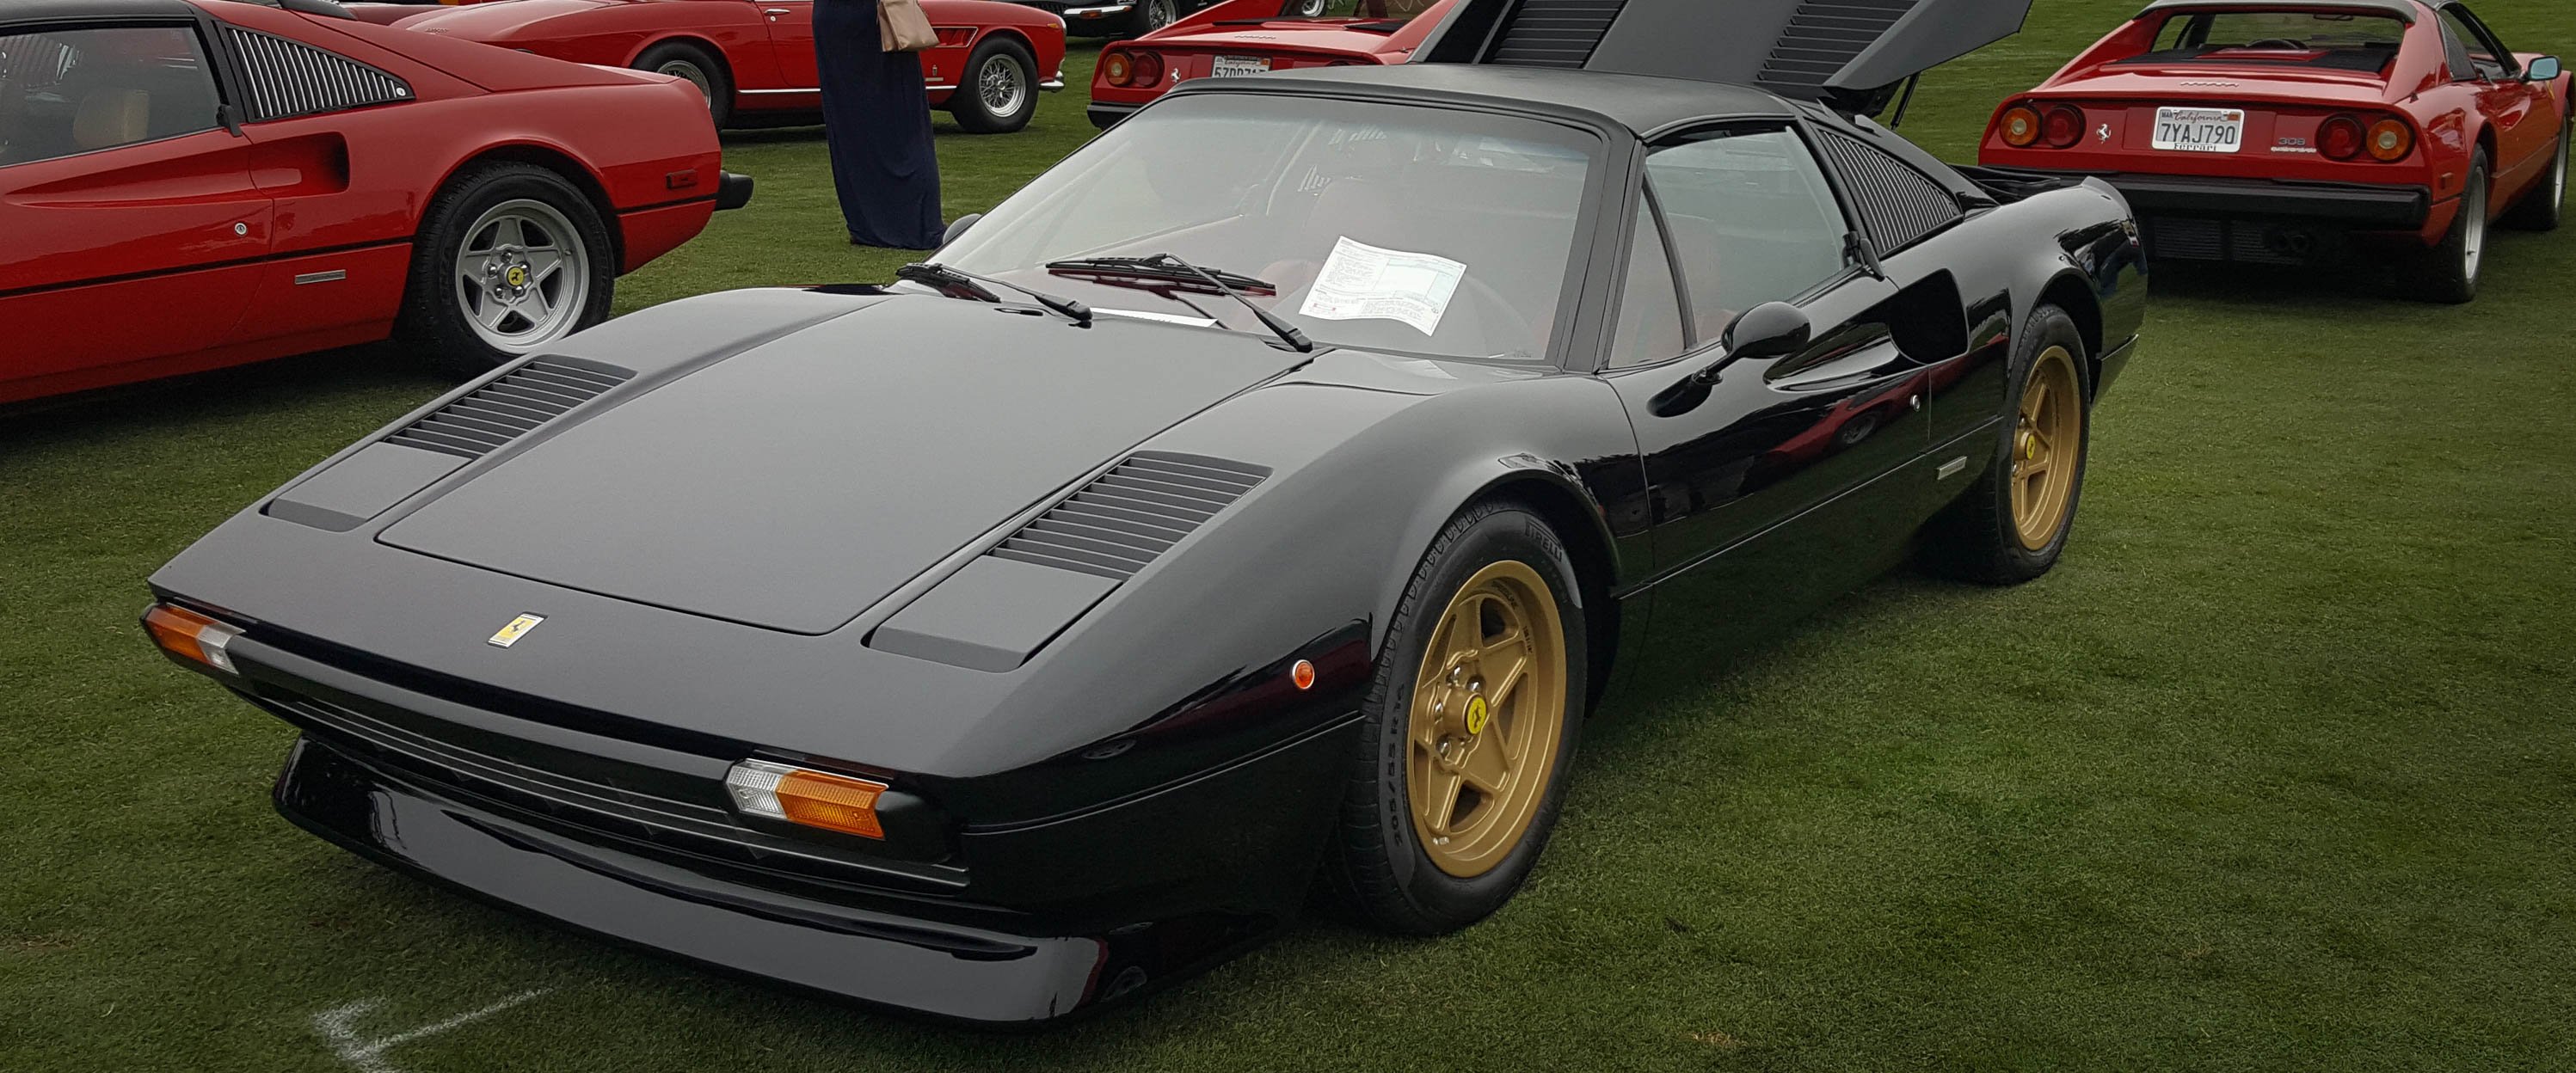 1979-Ferrari-308gts-final-black-slideshow-001@2x